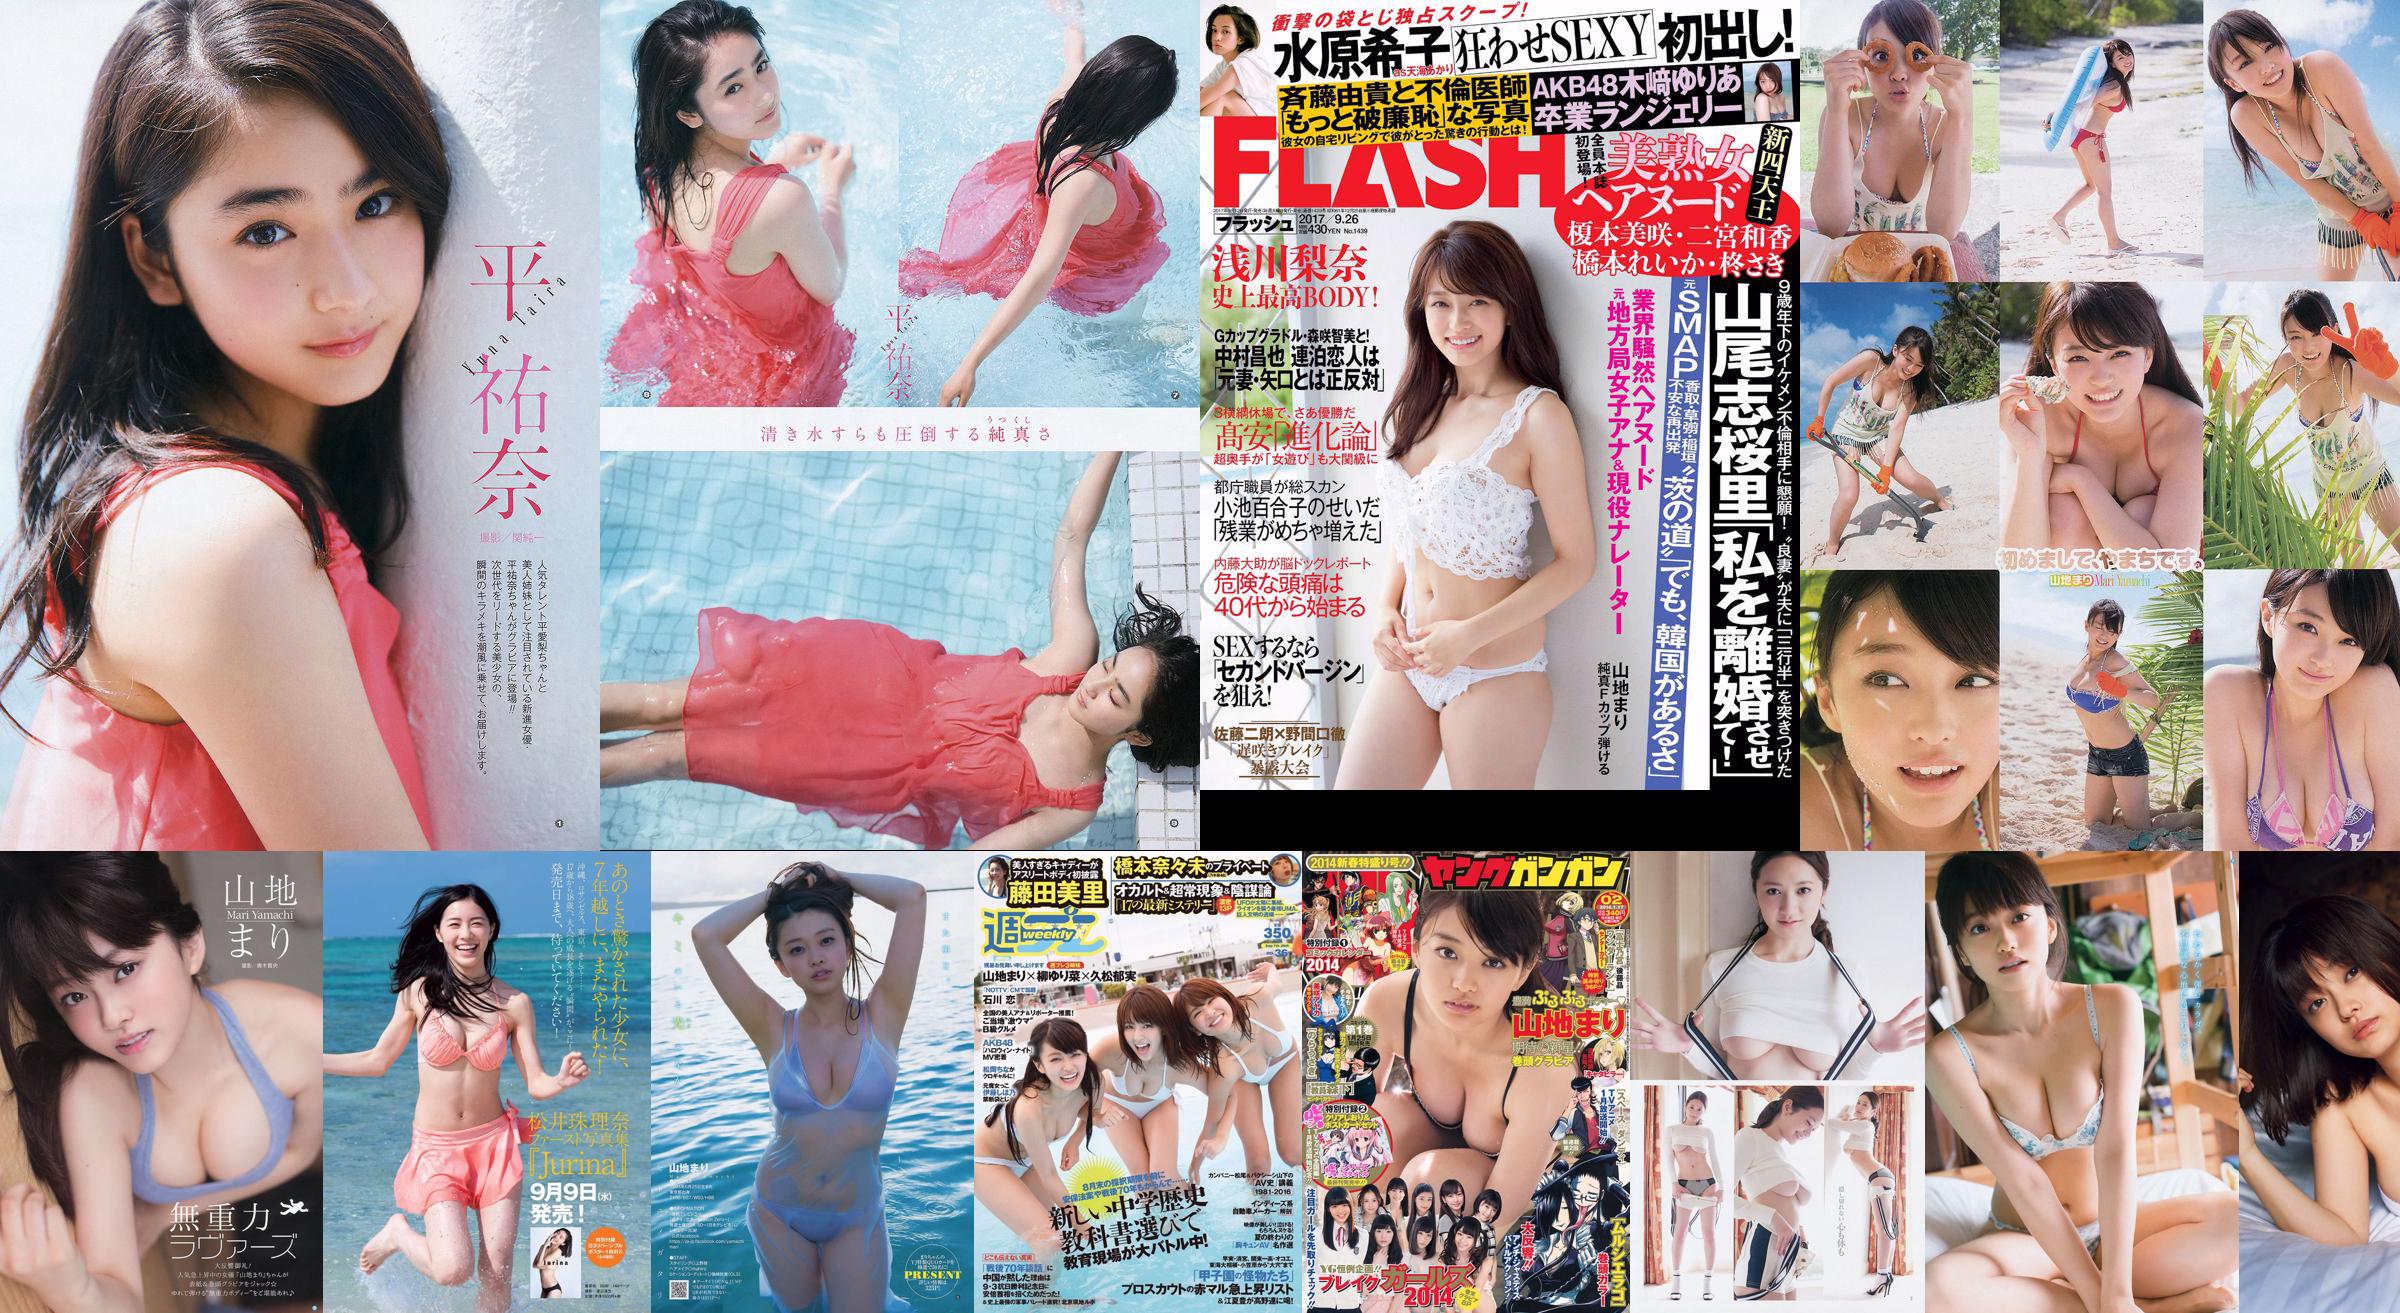 Mari Yamachi Yume Hazuki [Weekly Young Jump] Tạp chí ảnh số 34 năm 2014 No.128b0a Trang 1